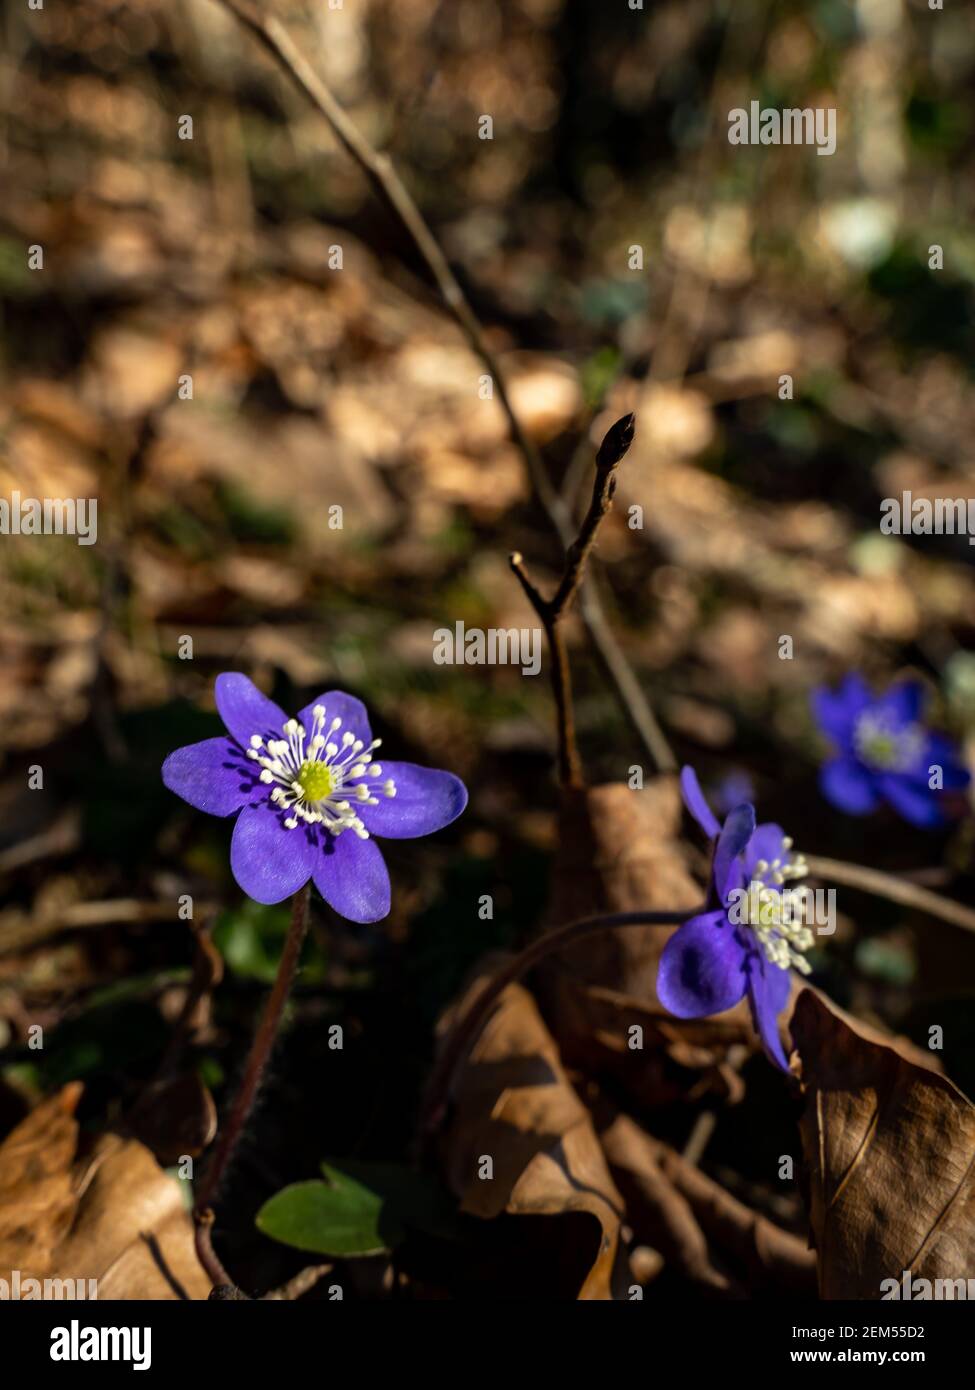 Leberblümchen blühen im Frühling als erstes im Wald. Leberblüten sind die ersten, die im Frühling im Wald blühen. Blaue Blüten mit weißen Staubgefäßen. Stockfoto